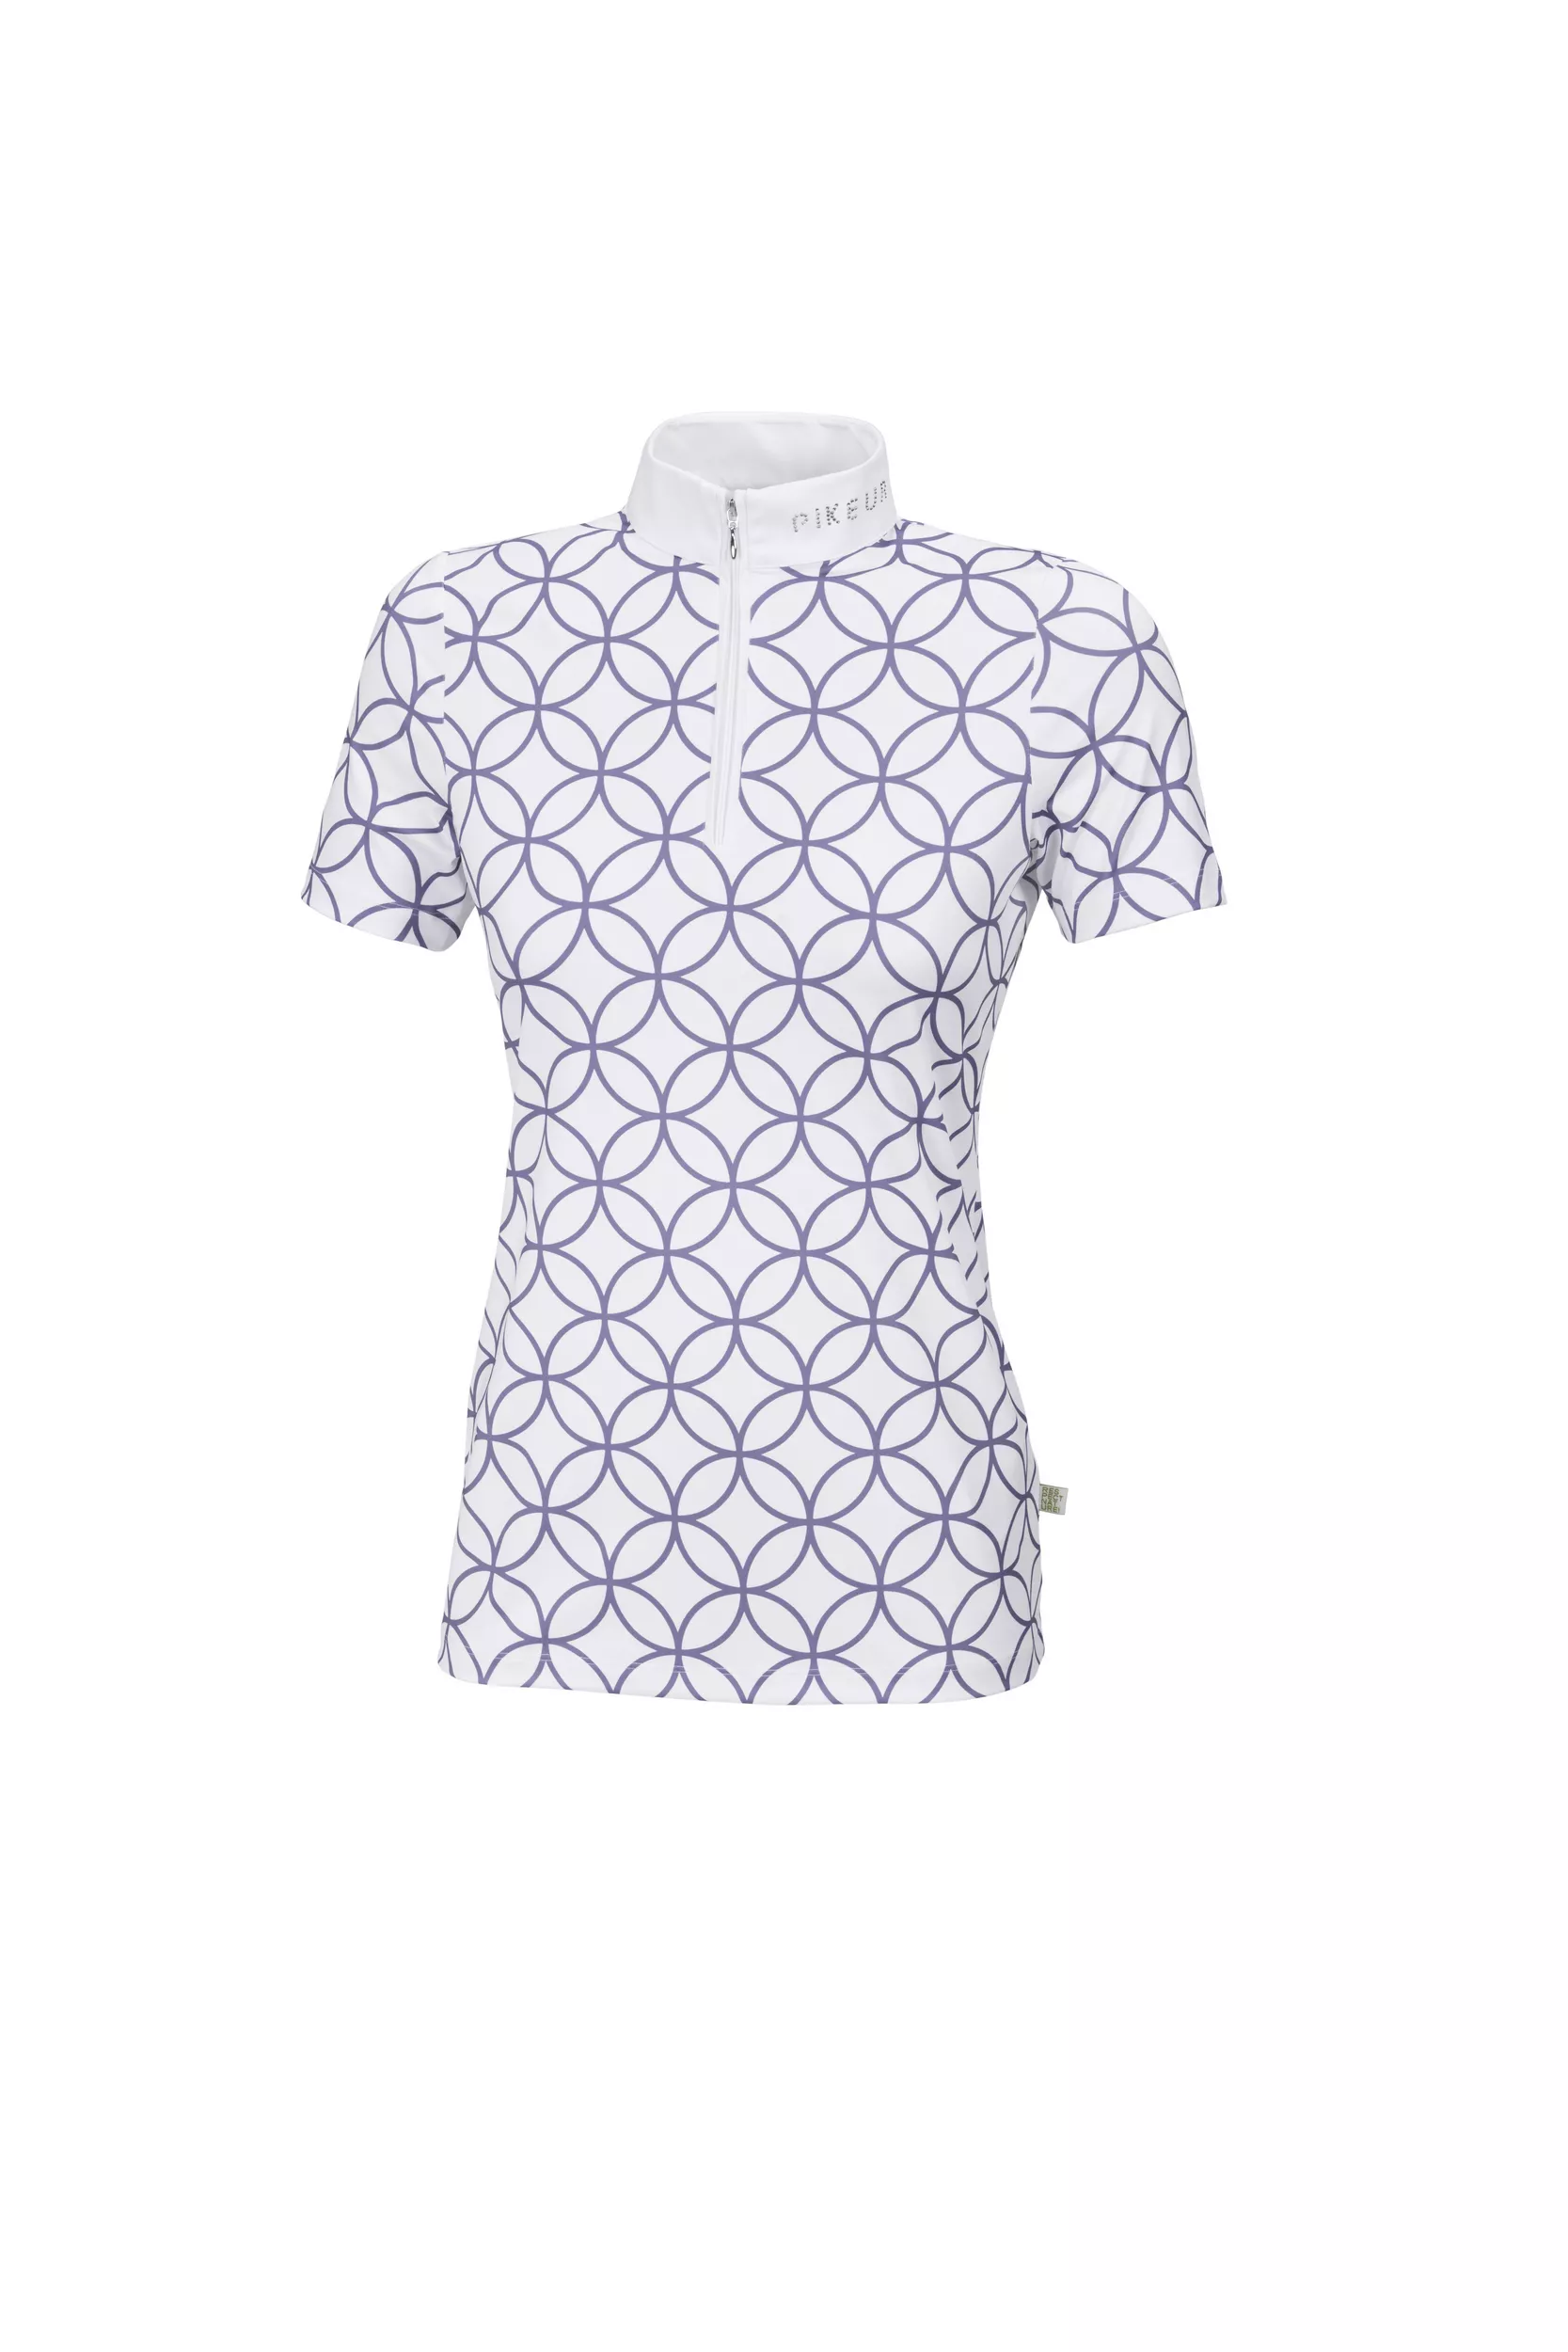 T-shirt de compétition femme Marou, Sportswear 22, blanc/violet argenté